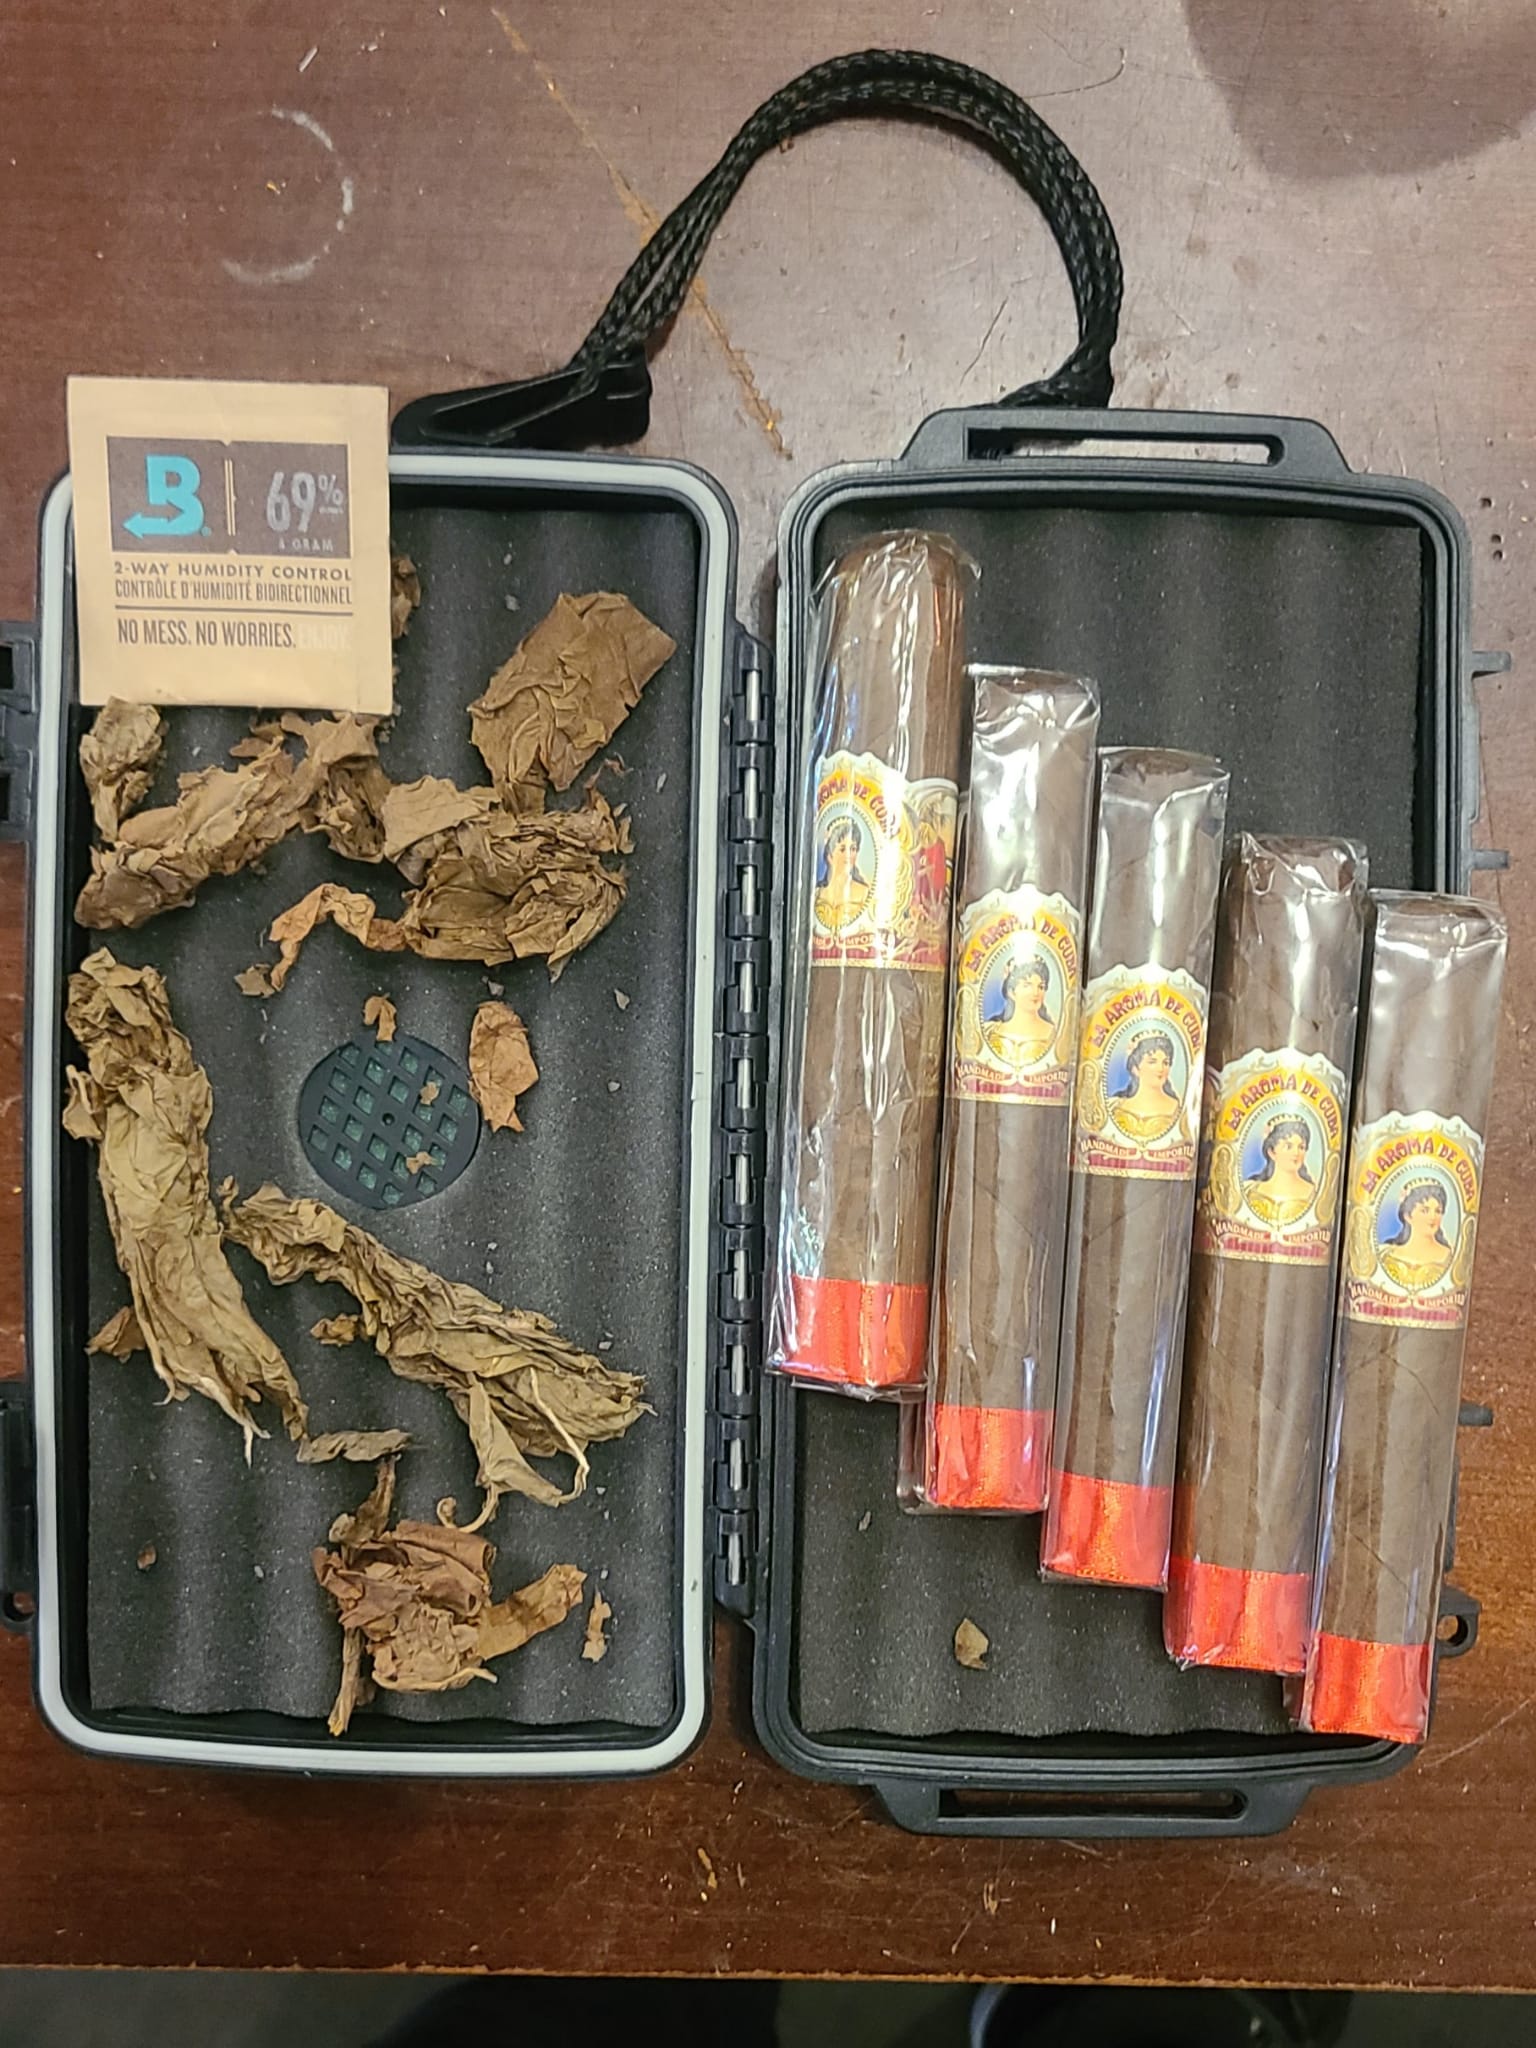 La Aroma de Cuba 5 Cigar - Humidor Combo